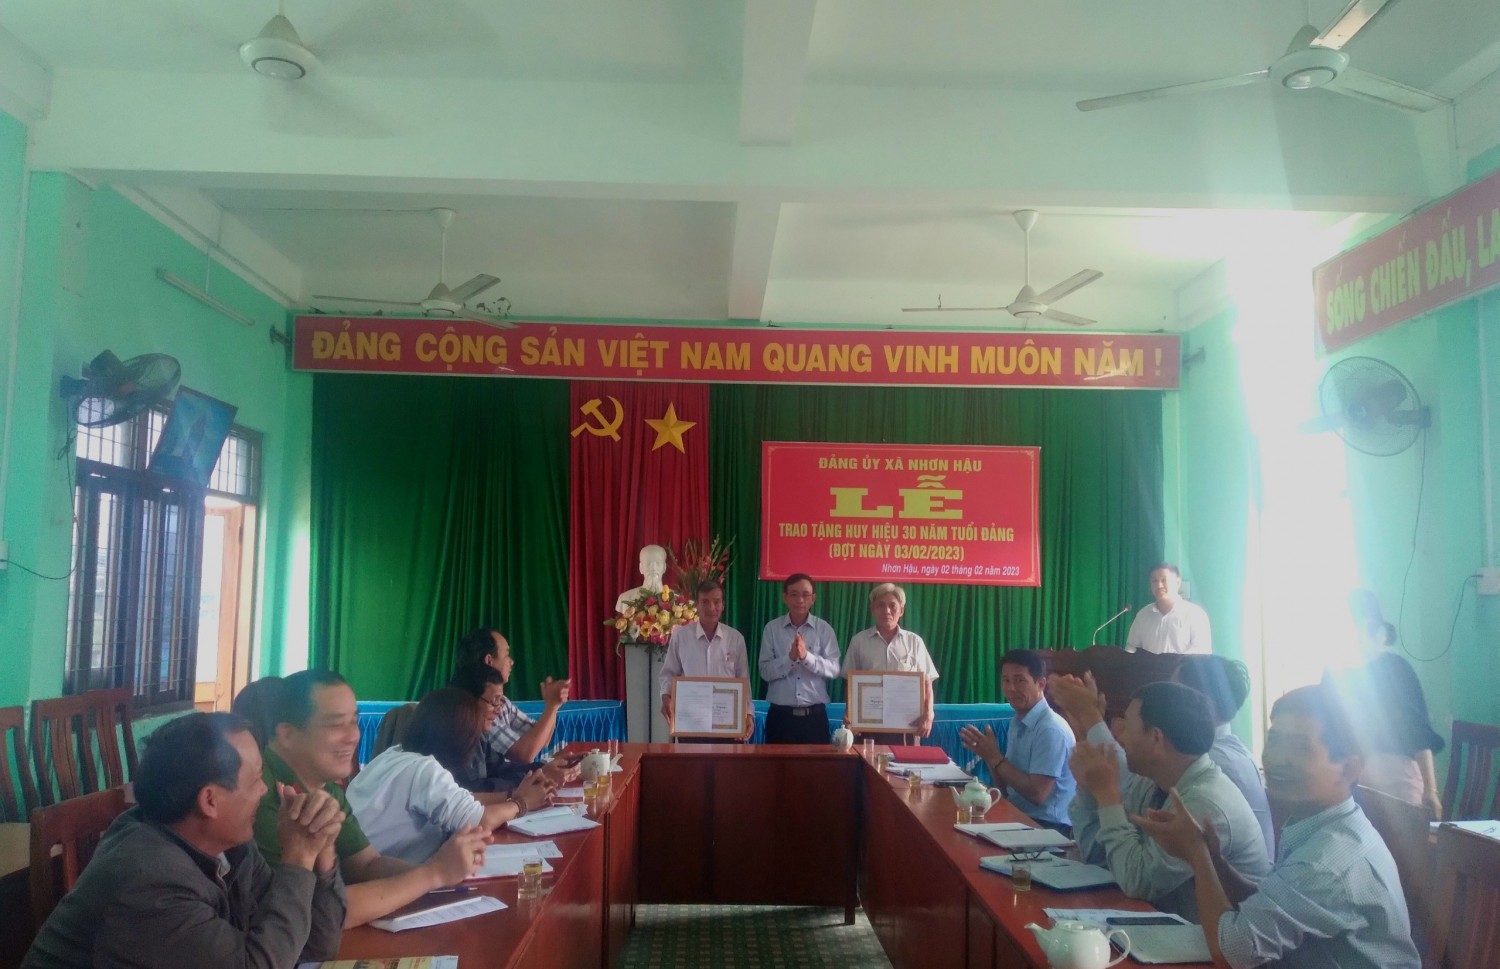 Đảng ủy xã Nhơn Hậu tổ chức trao tặng Huy hiệu 30 năm tuổi Đảng